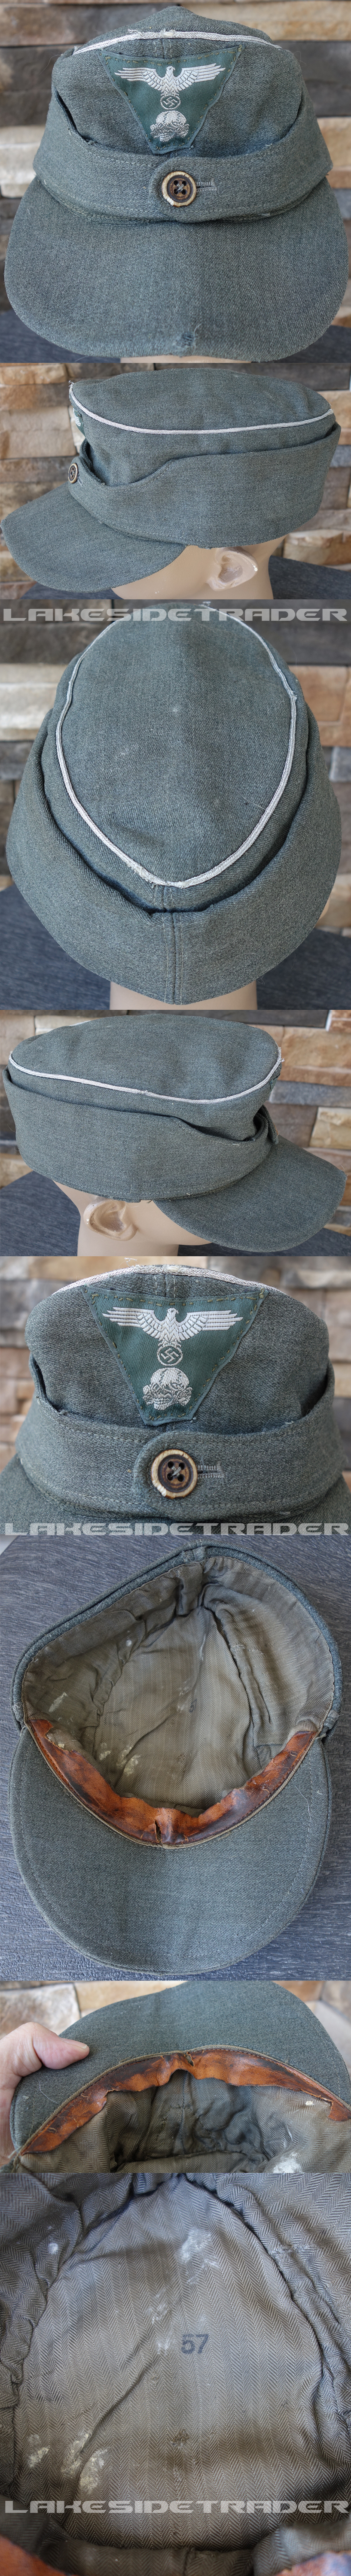 SS M43 Waffen SS Officer Field Cap